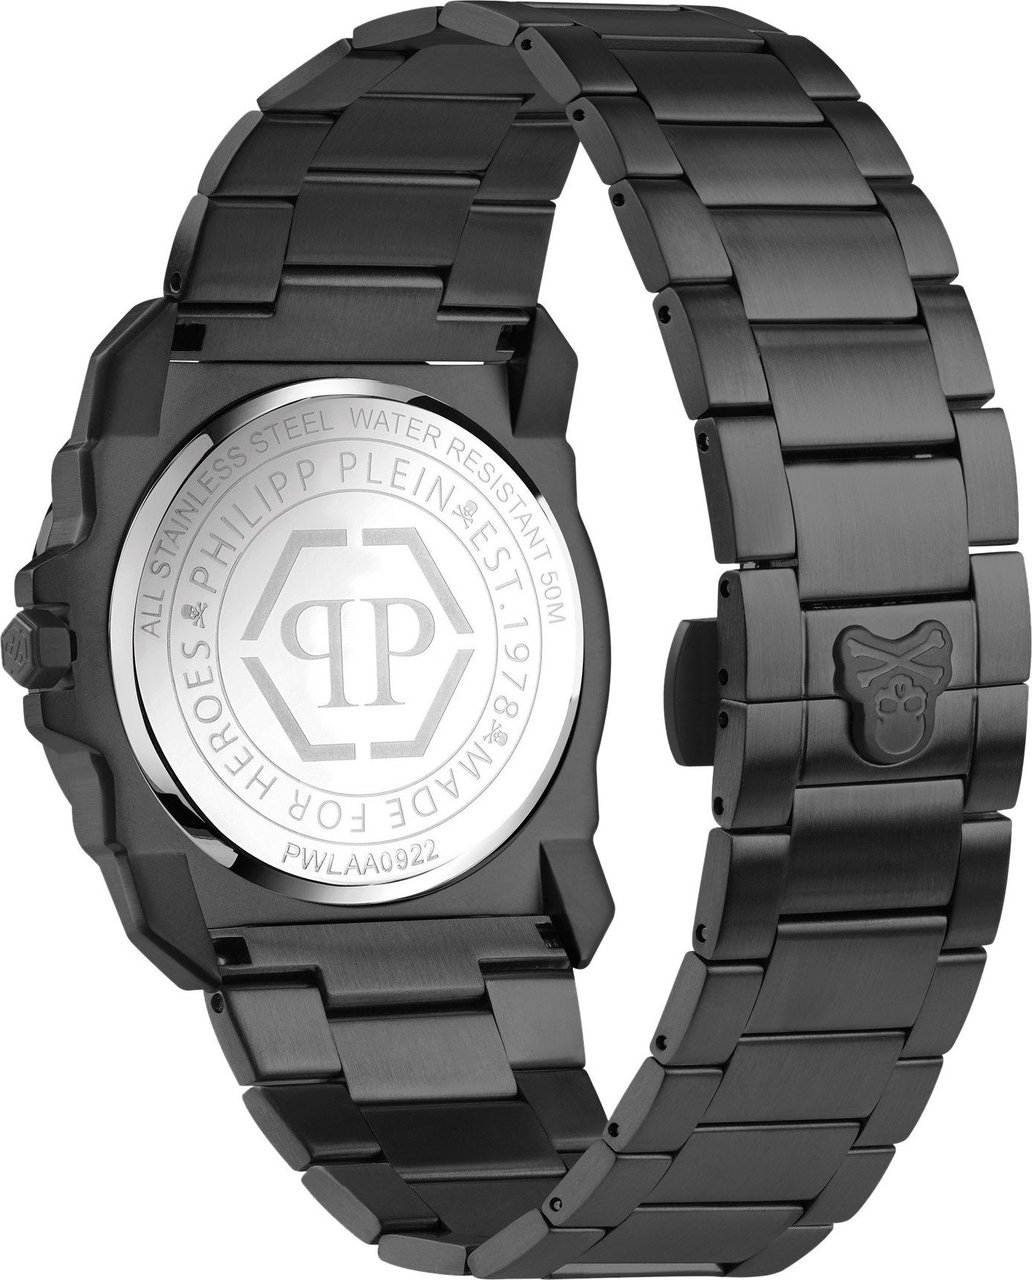 Philipp Plein PWLAA0922 The $kull King horloge 40 mm Zwart